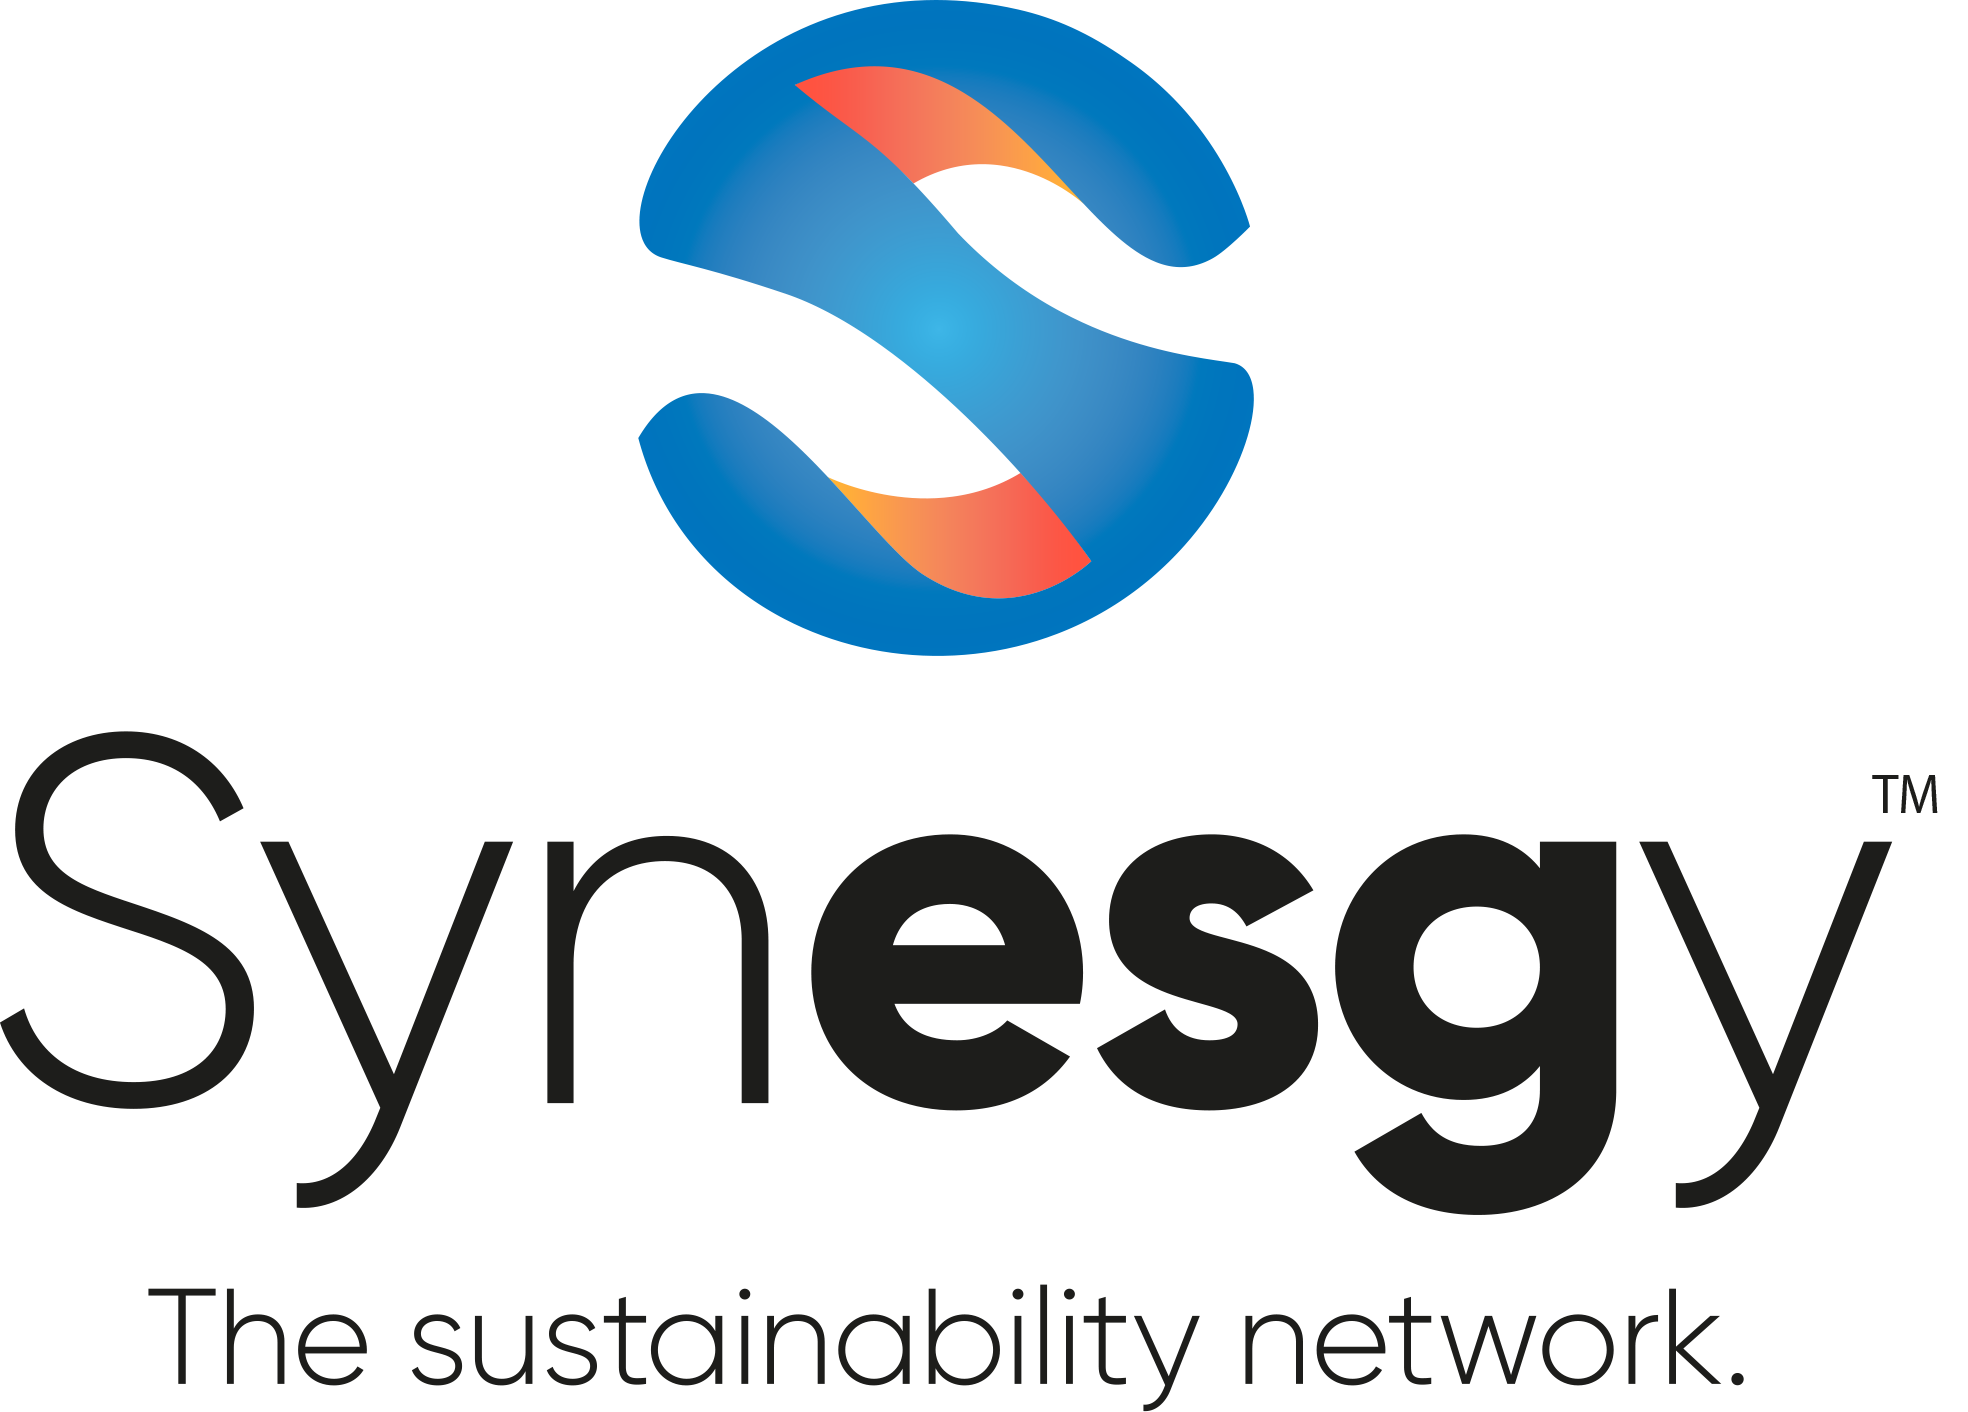 Logo_Synesgy_TM